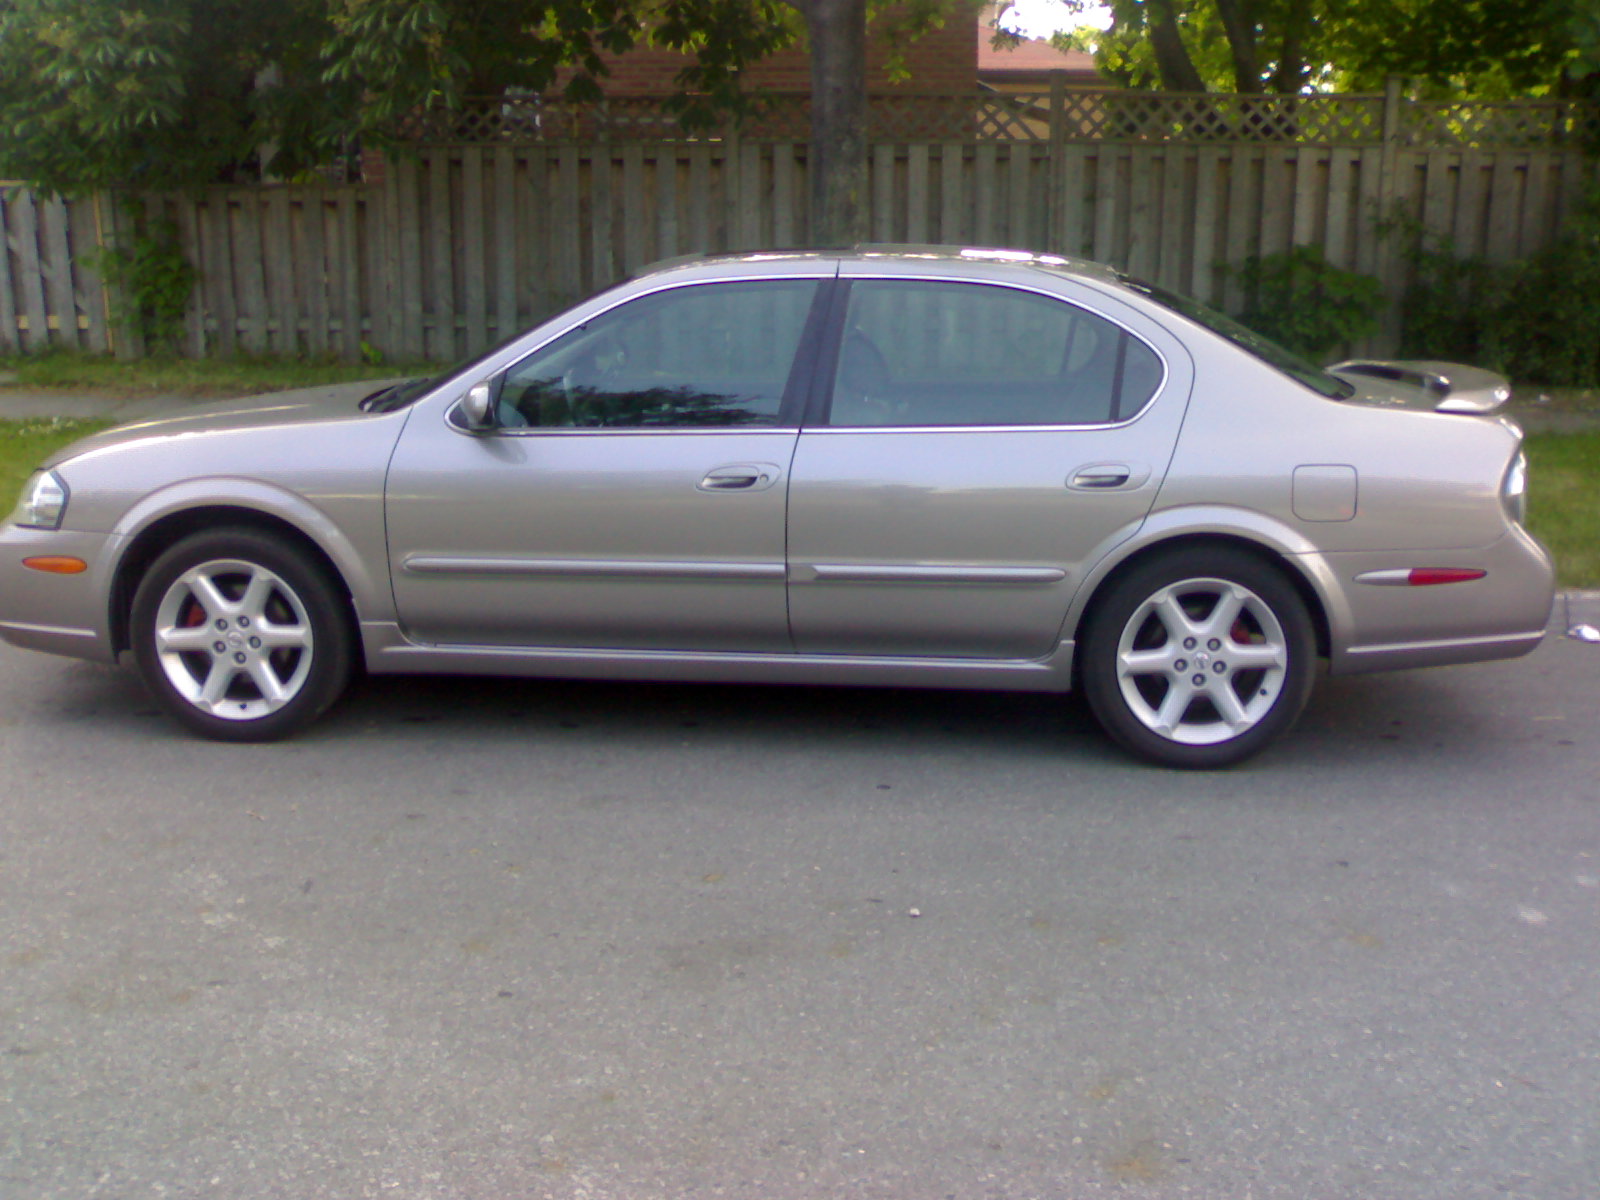 2002 Nissan maxima exterior colors